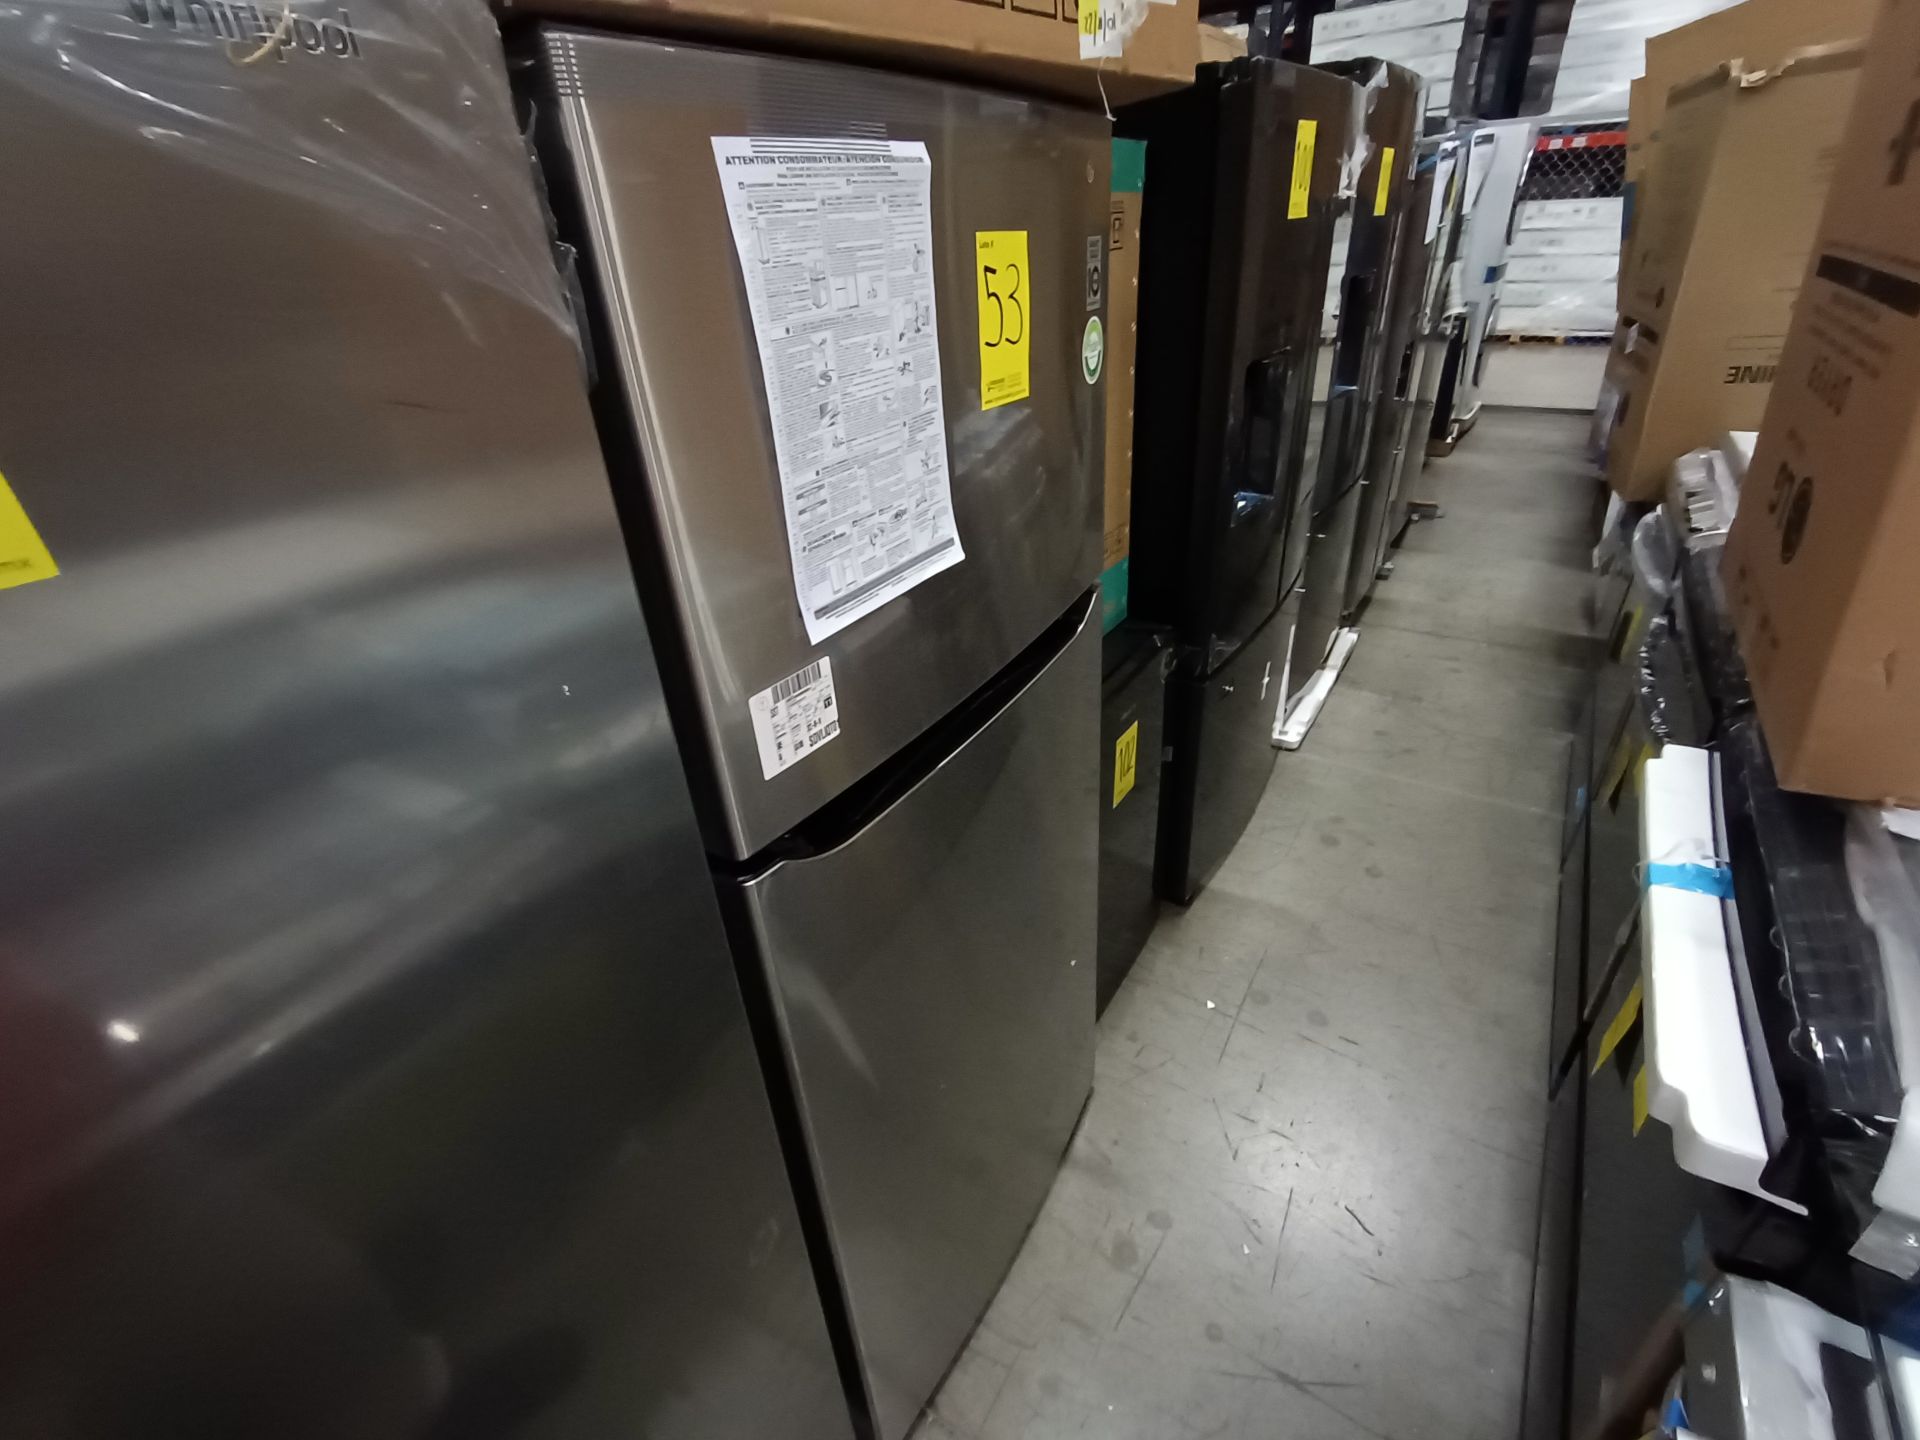 1 Refrigerador Marca LG, Modelo LT57BPSX, No de serie 209MRAQ10296, Color Gris, LB-025604. - Image 2 of 9